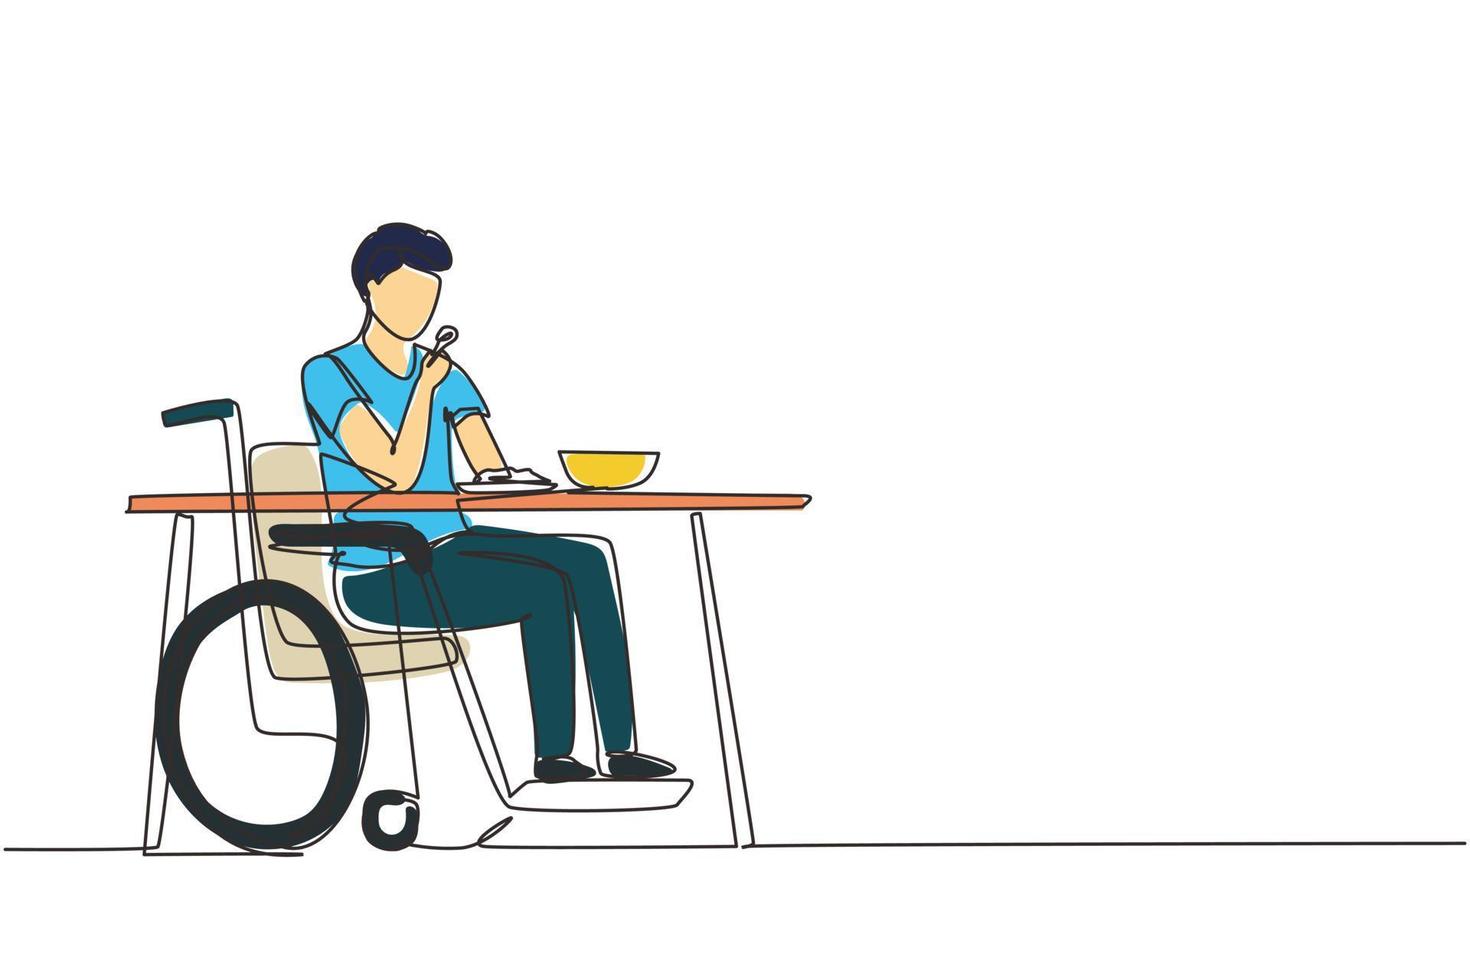 único desenho de uma linha masculino jovem cadeirante comendo comida sentado à mesa. almoçando, lanche no café. sociedade e pessoas com deficiência. ilustração em vetor gráfico de desenho de linha contínua